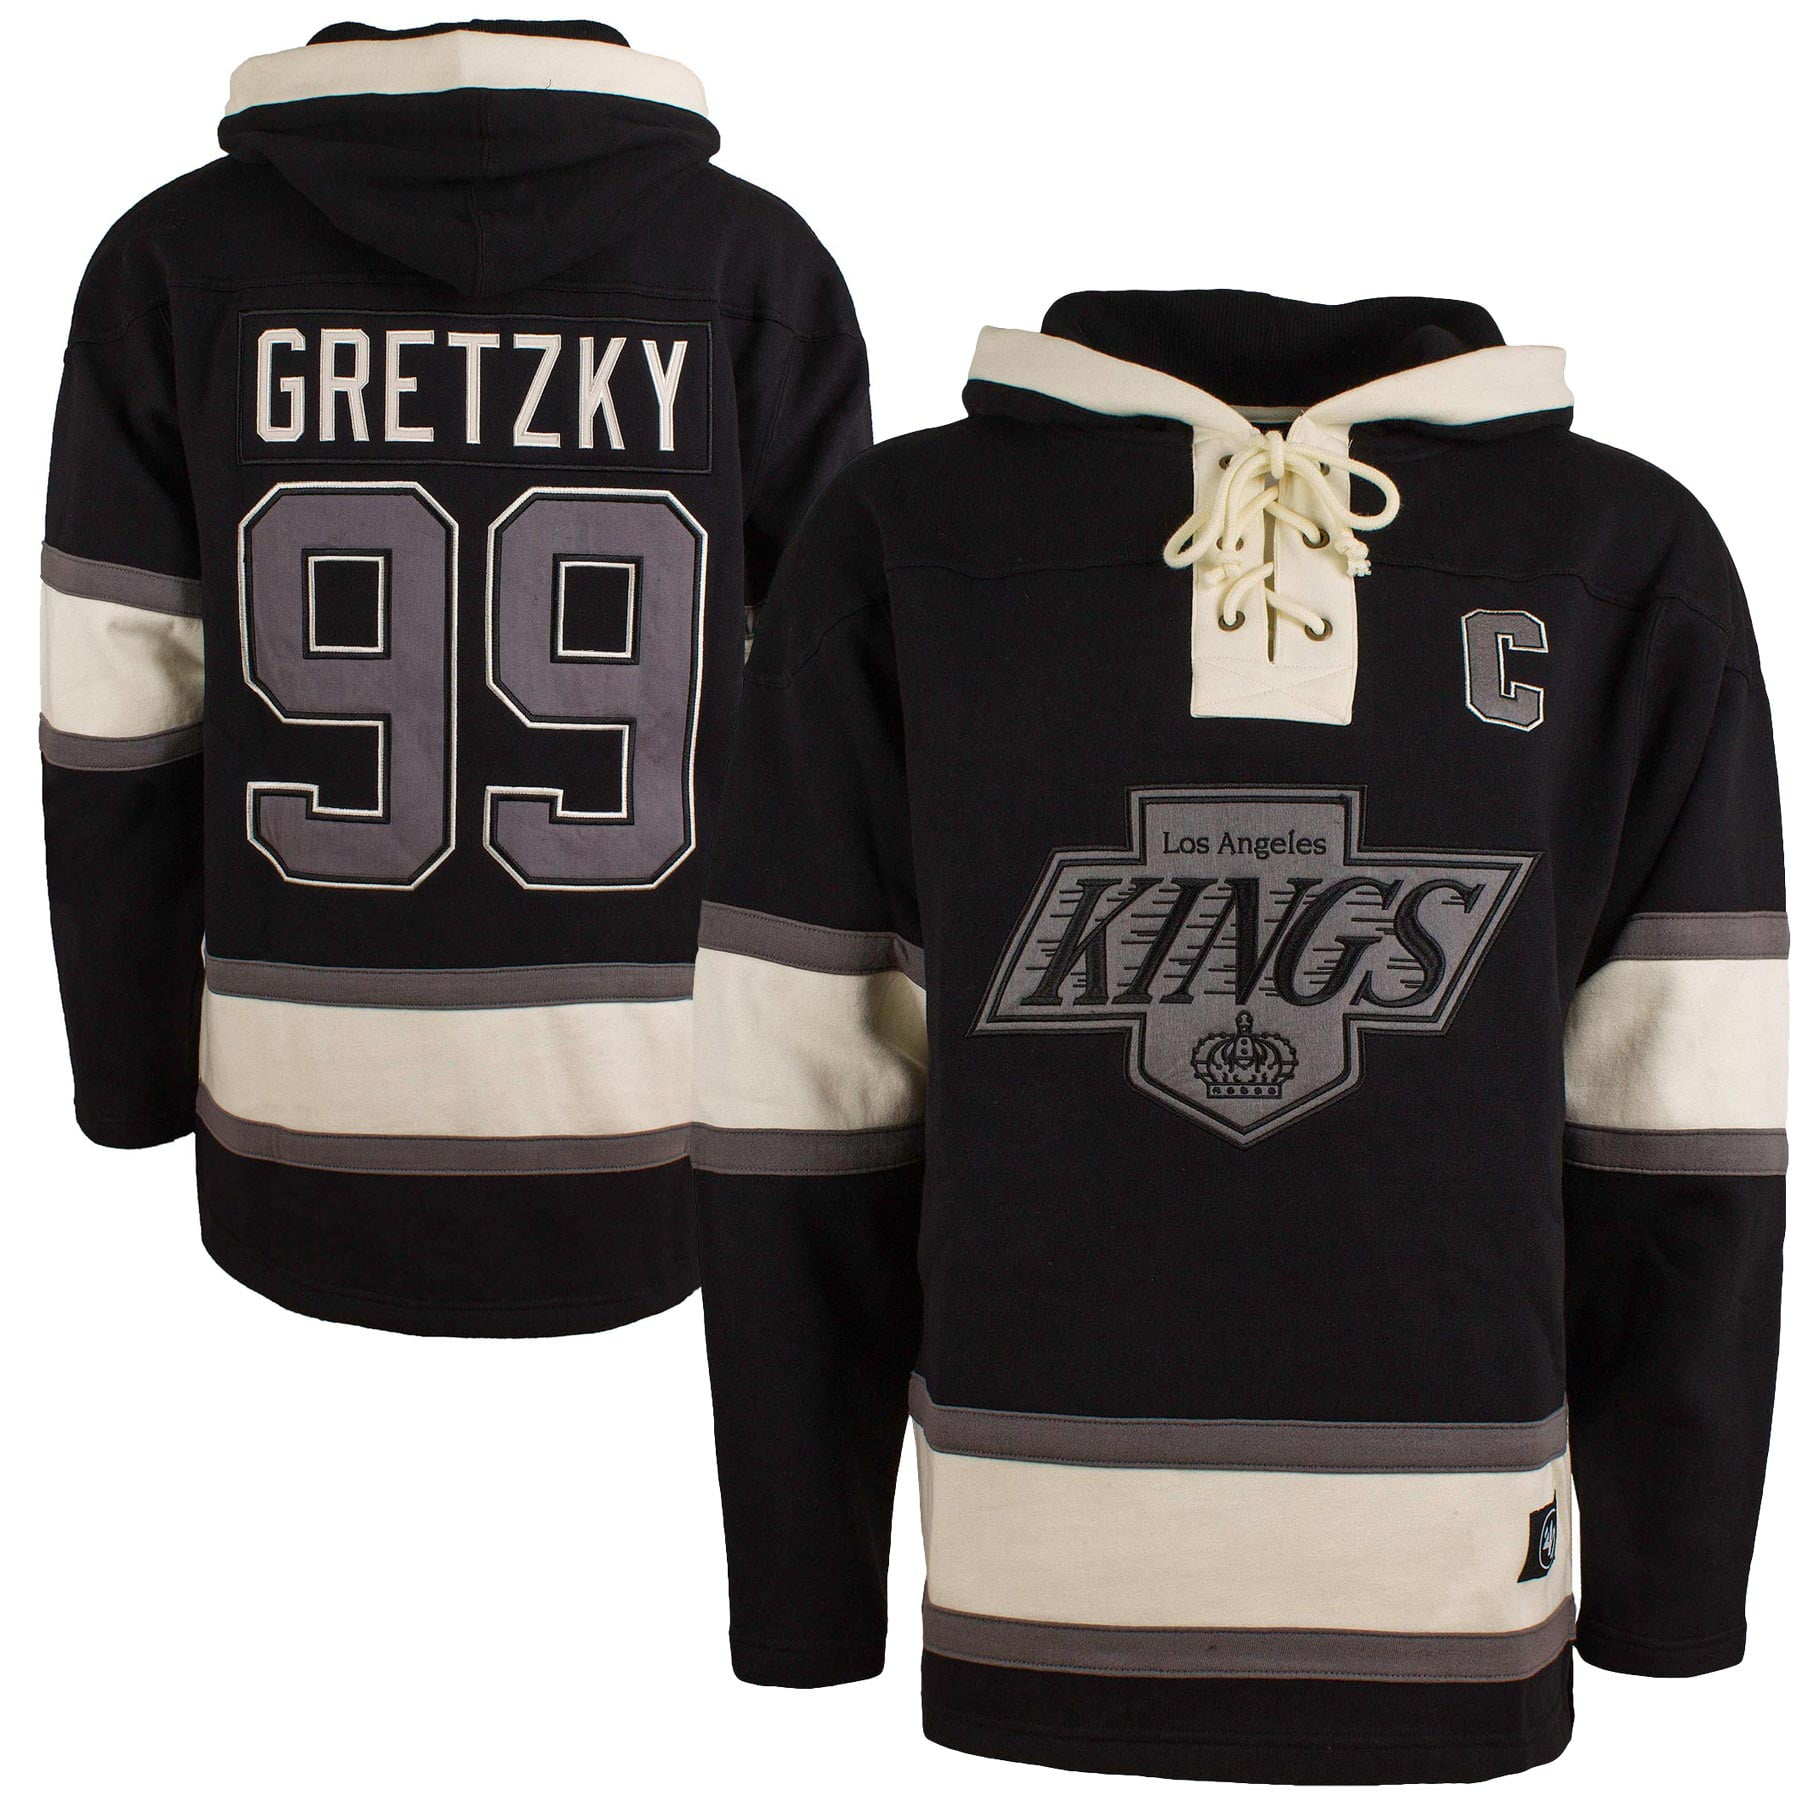 la kings hockey hoodie